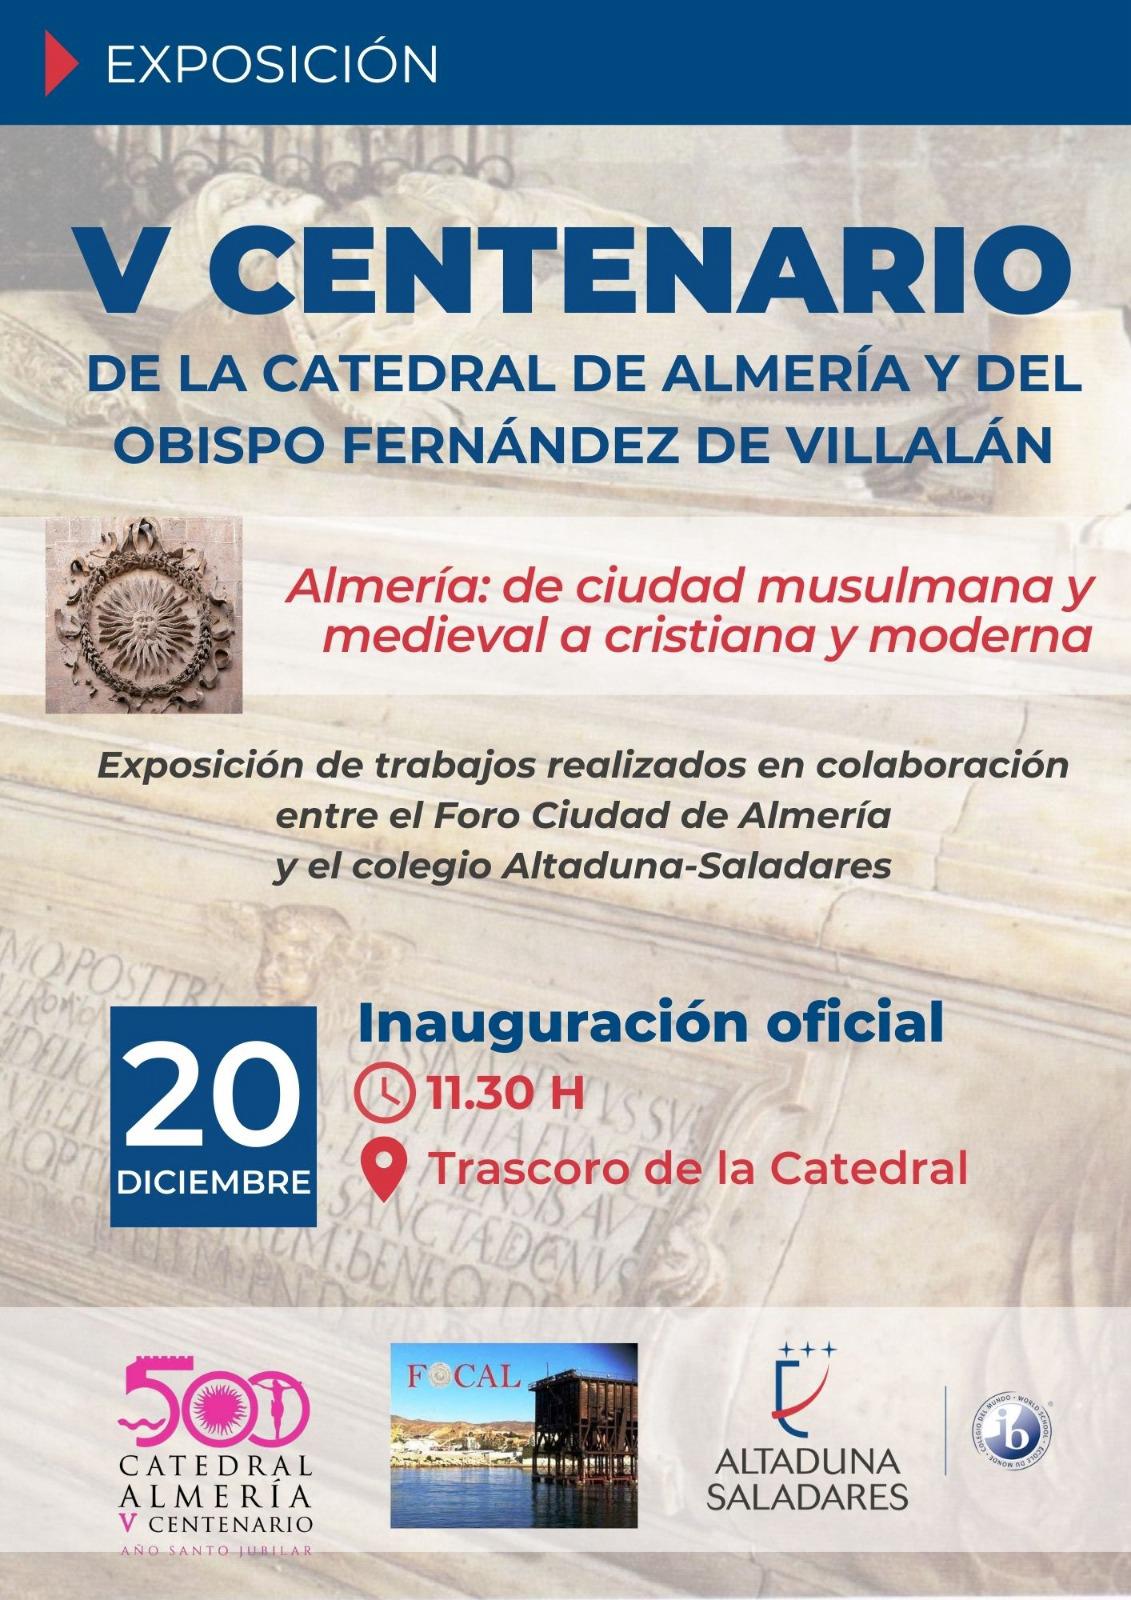 V Centenario de la Catedral de Almería y del obispo Fernández de Villalán